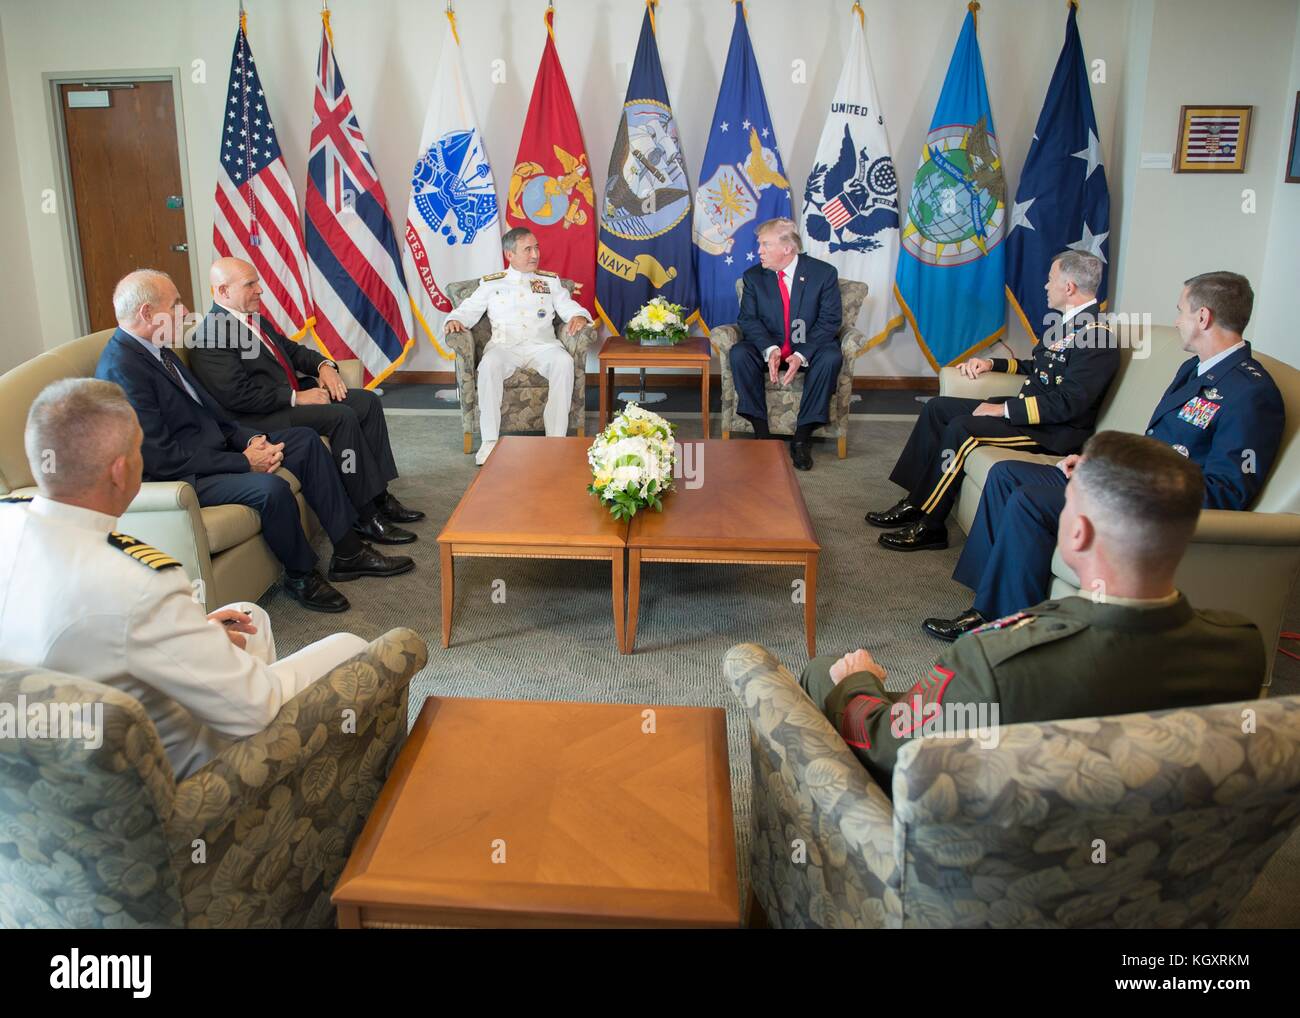 Américaines du Pacifique (USPACOM) frégate Harry Harris (à gauche) et le président américain Donald Trump réunit à la camp il h. m. smith siège de l'USPACOM 3 novembre 2017 à l'aiea, Hawaii. (Photo de Robin w. planetpix pic via) Banque D'Images